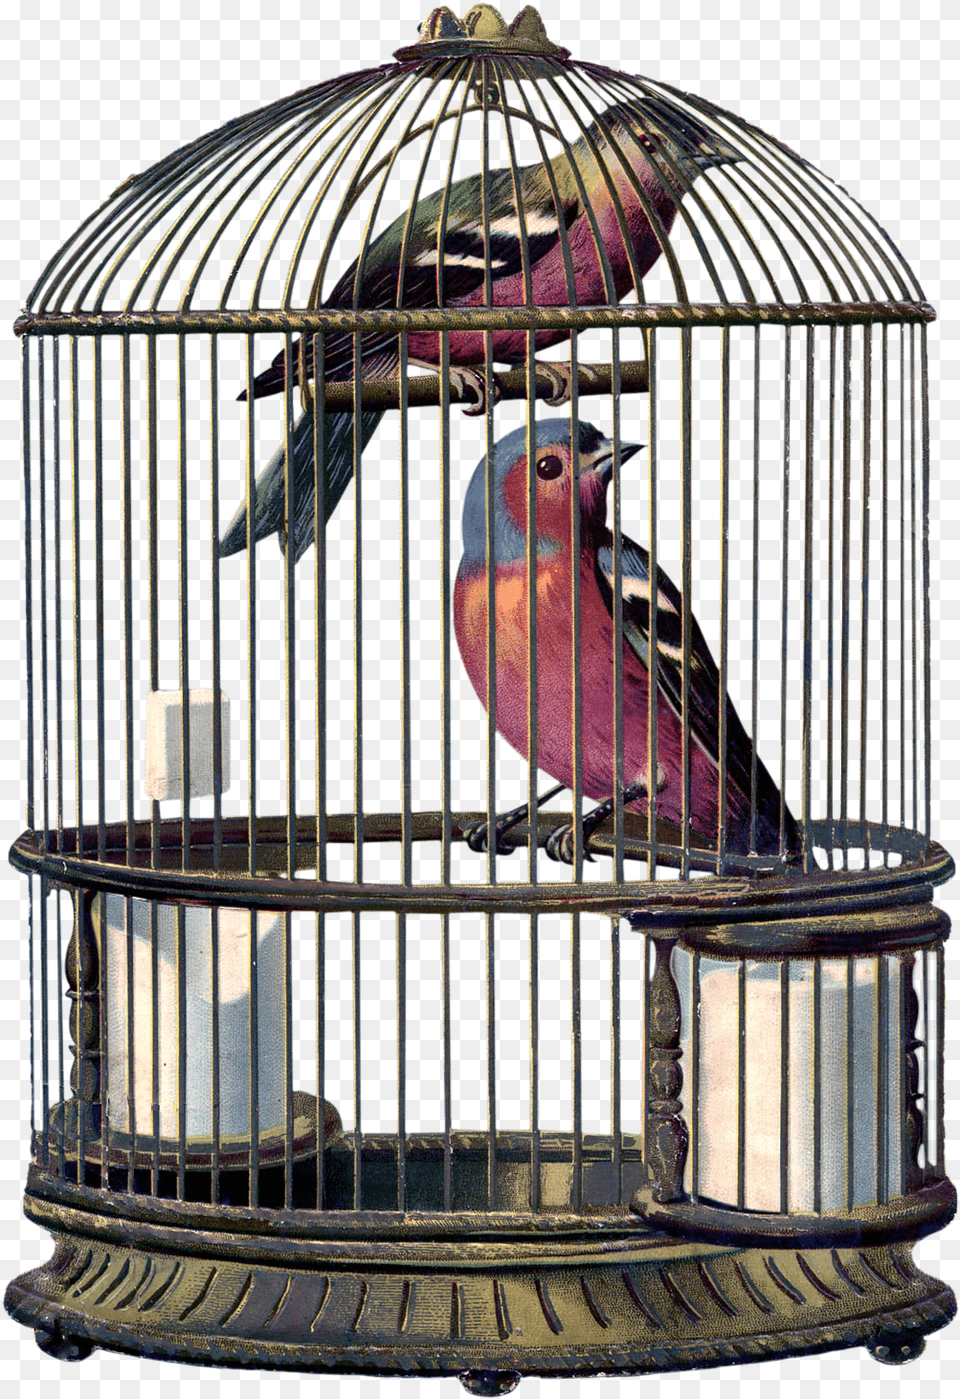 Encantarte Imagens Vintage Bird In A Cage, Animal, Finch Png